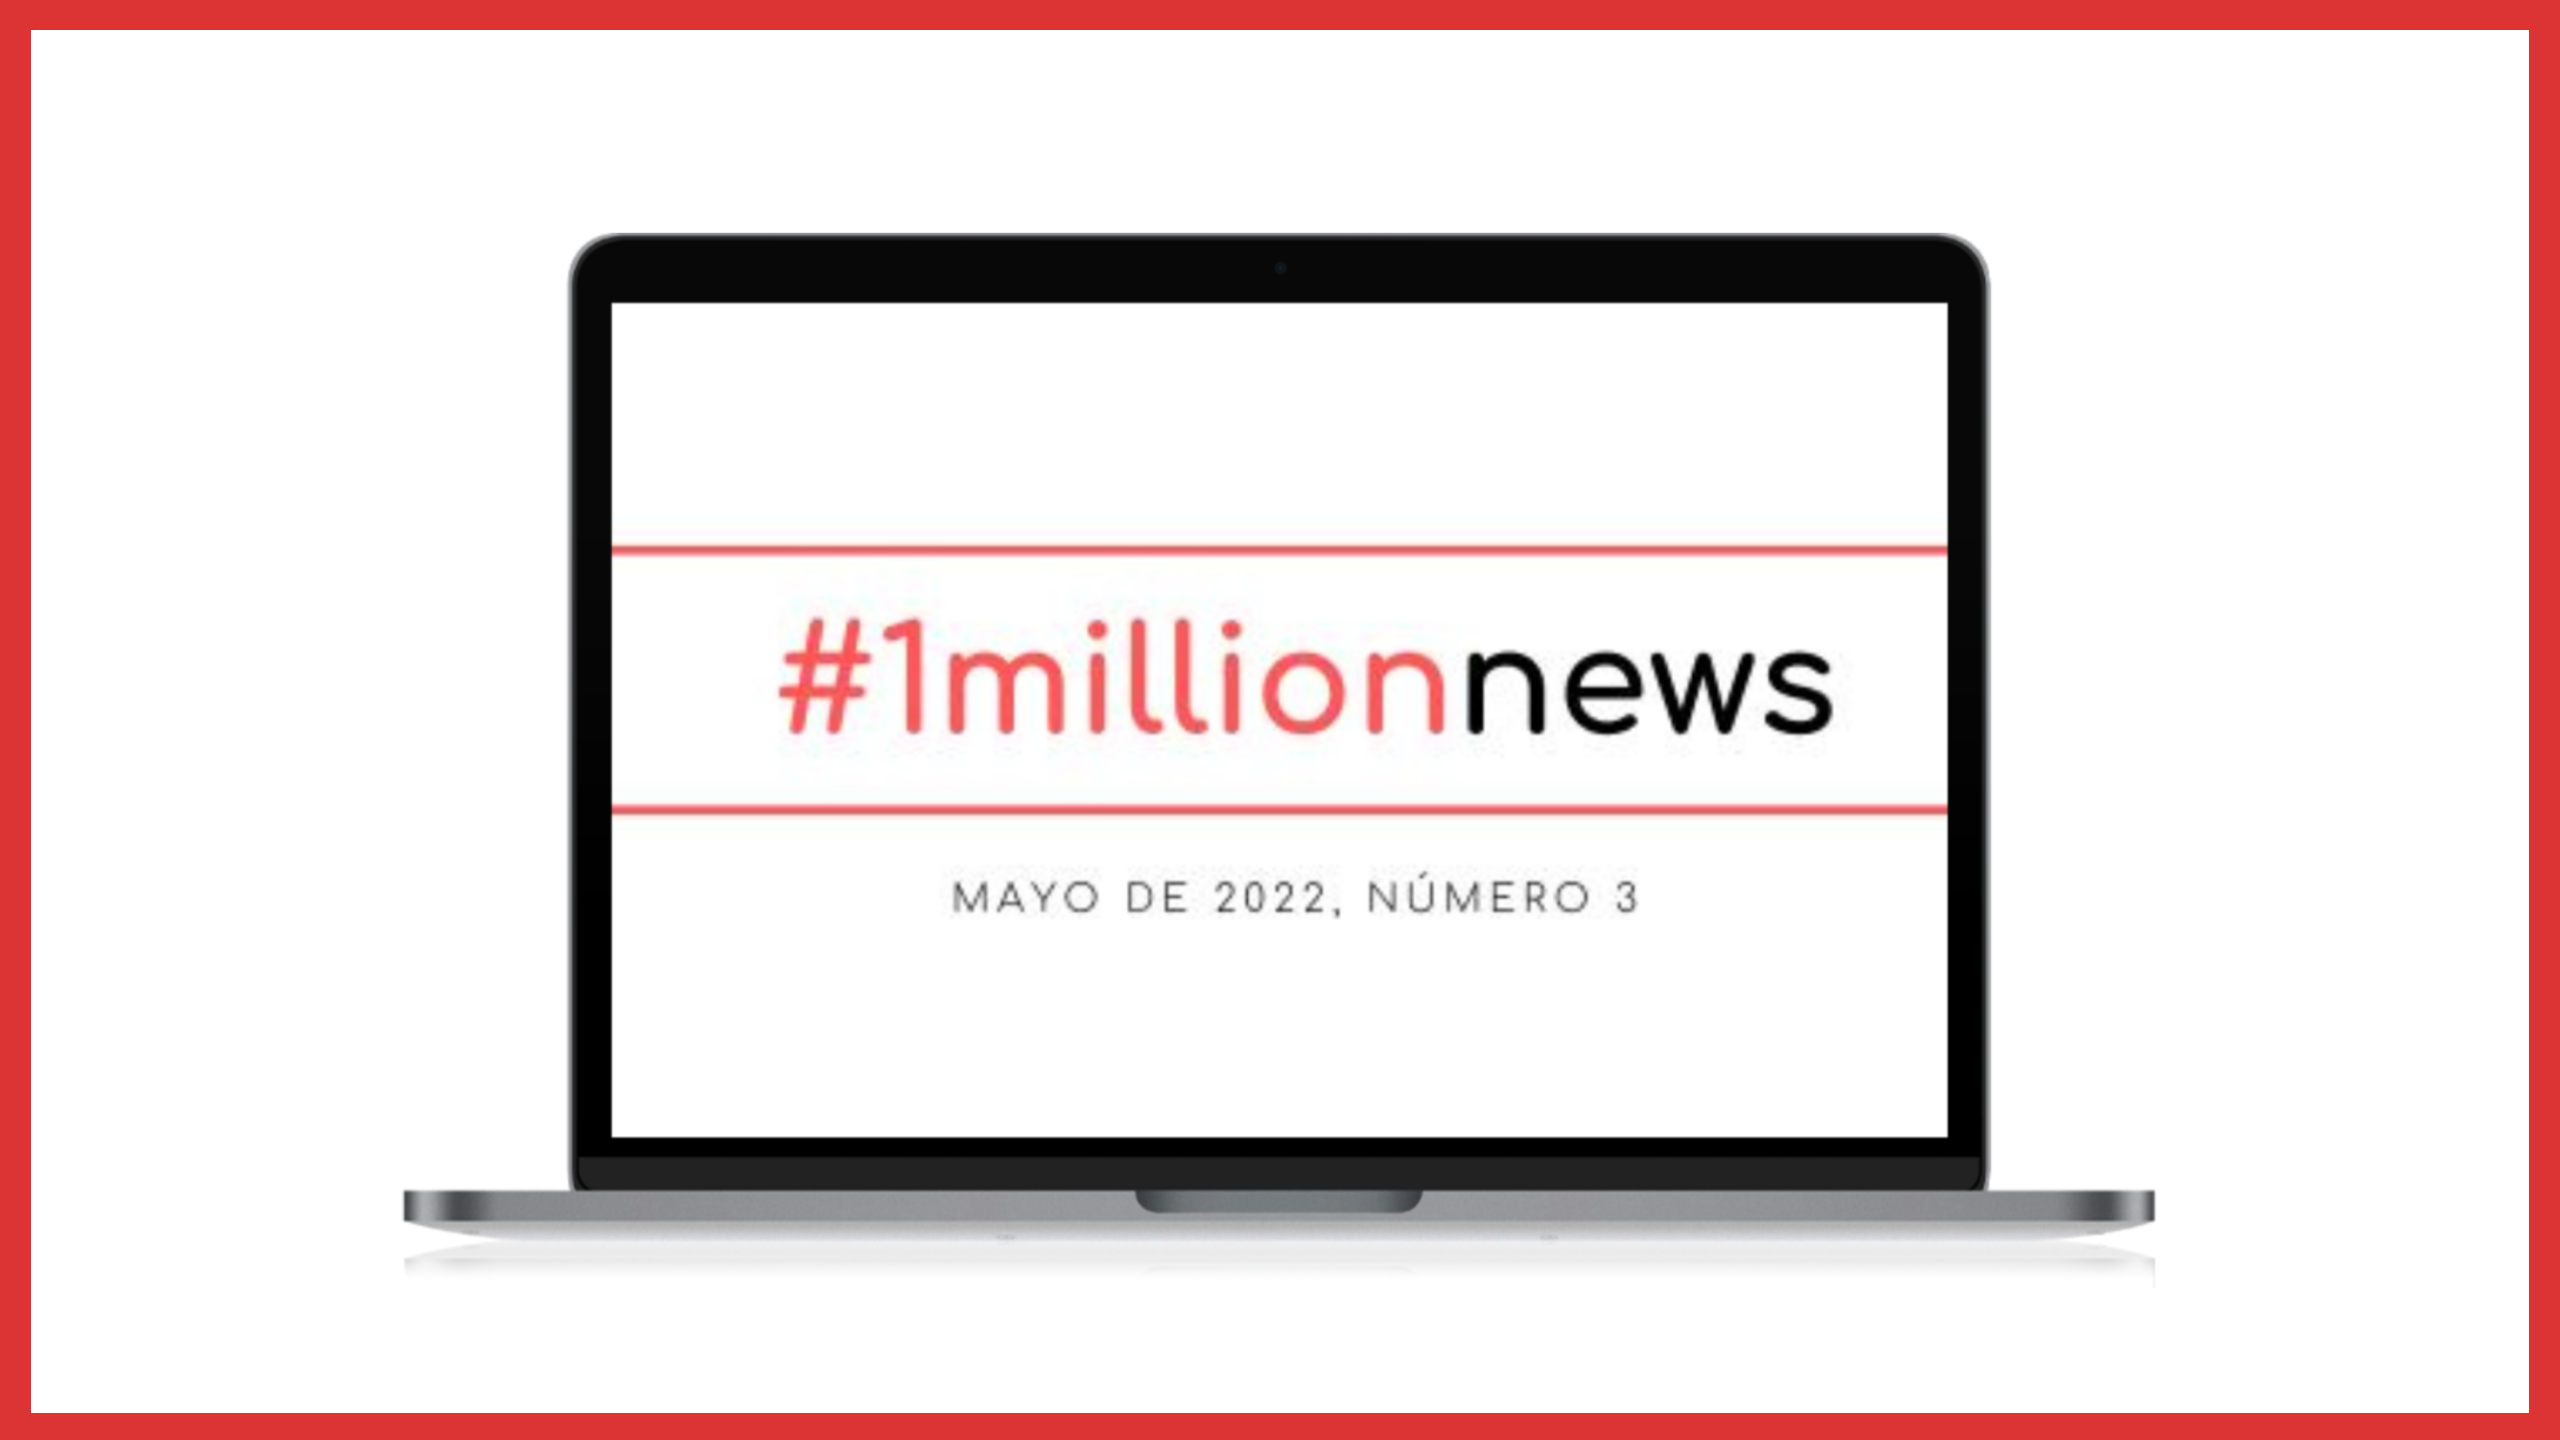 1millionbot lanza su propia newsletter para compartir ideas, proyectos y actualidad sobre Inteligencia Artificial